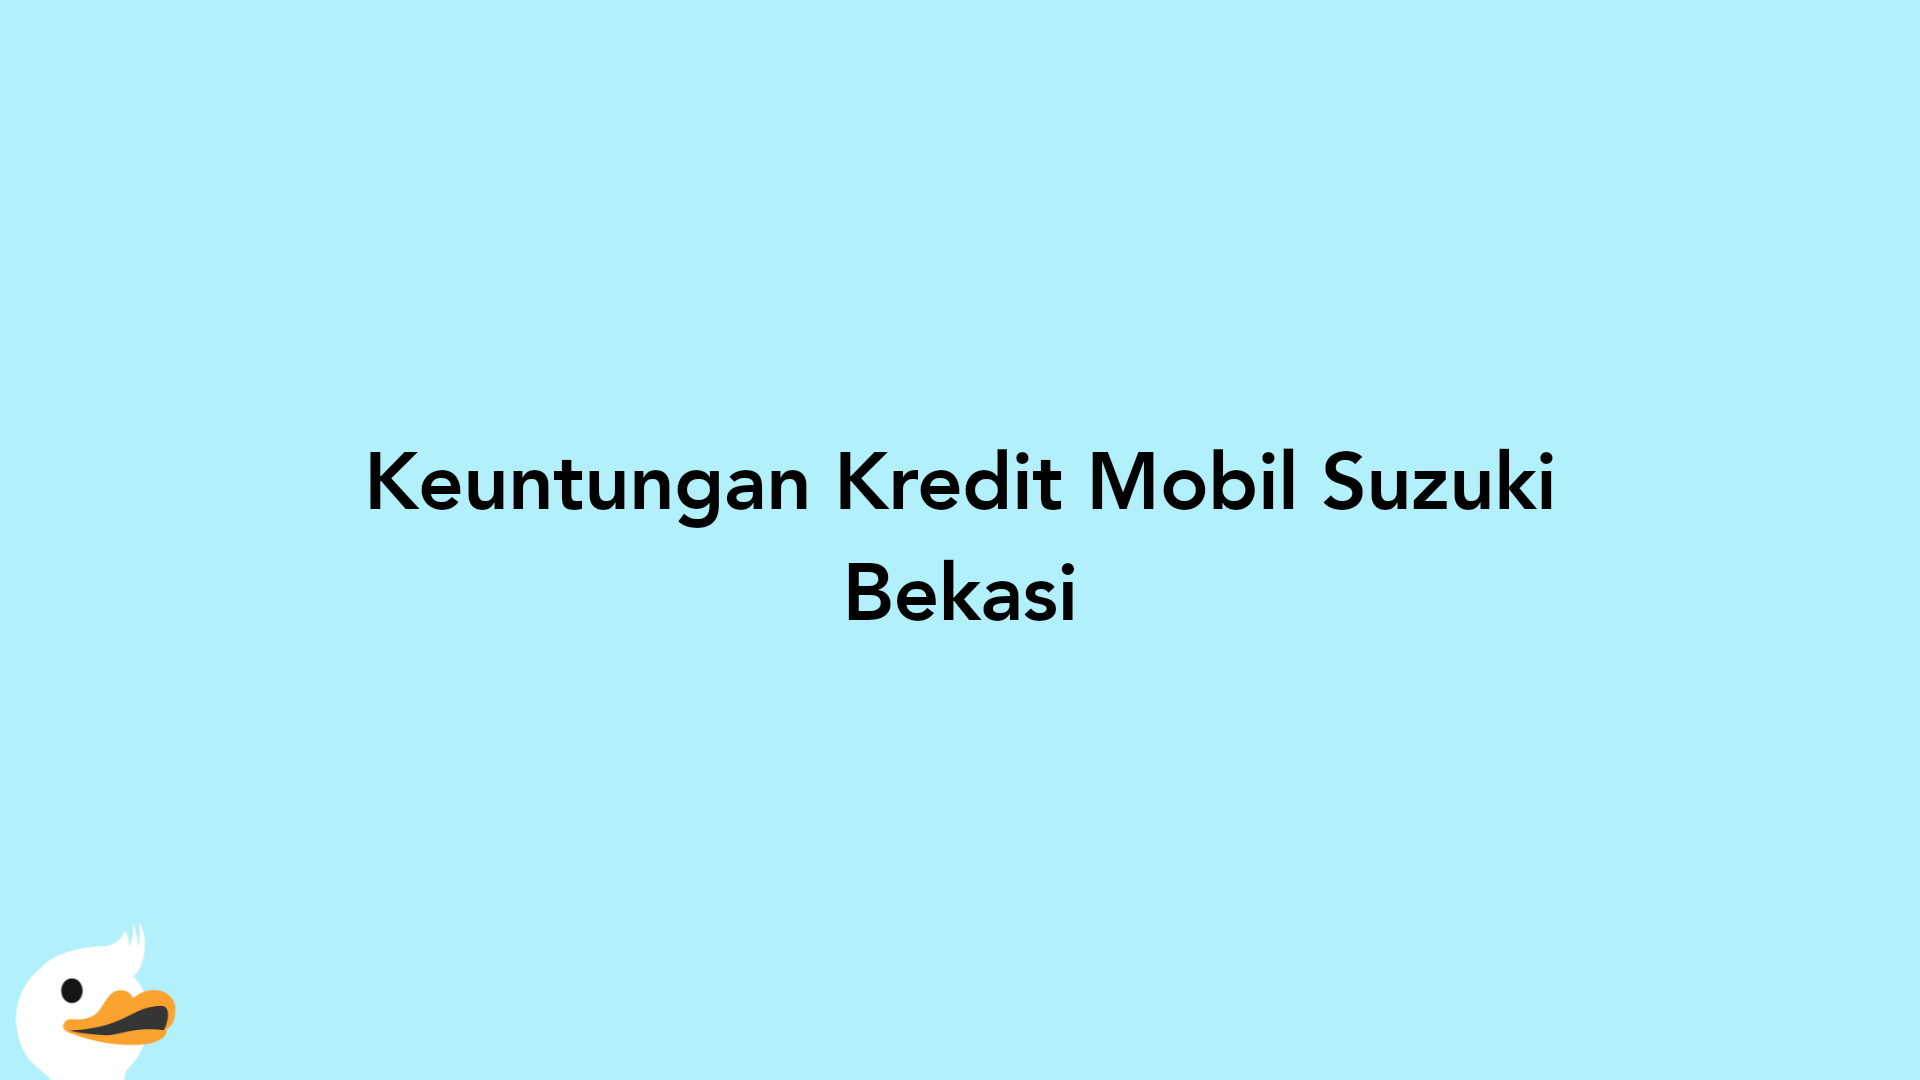 Keuntungan Kredit Mobil Suzuki Bekasi